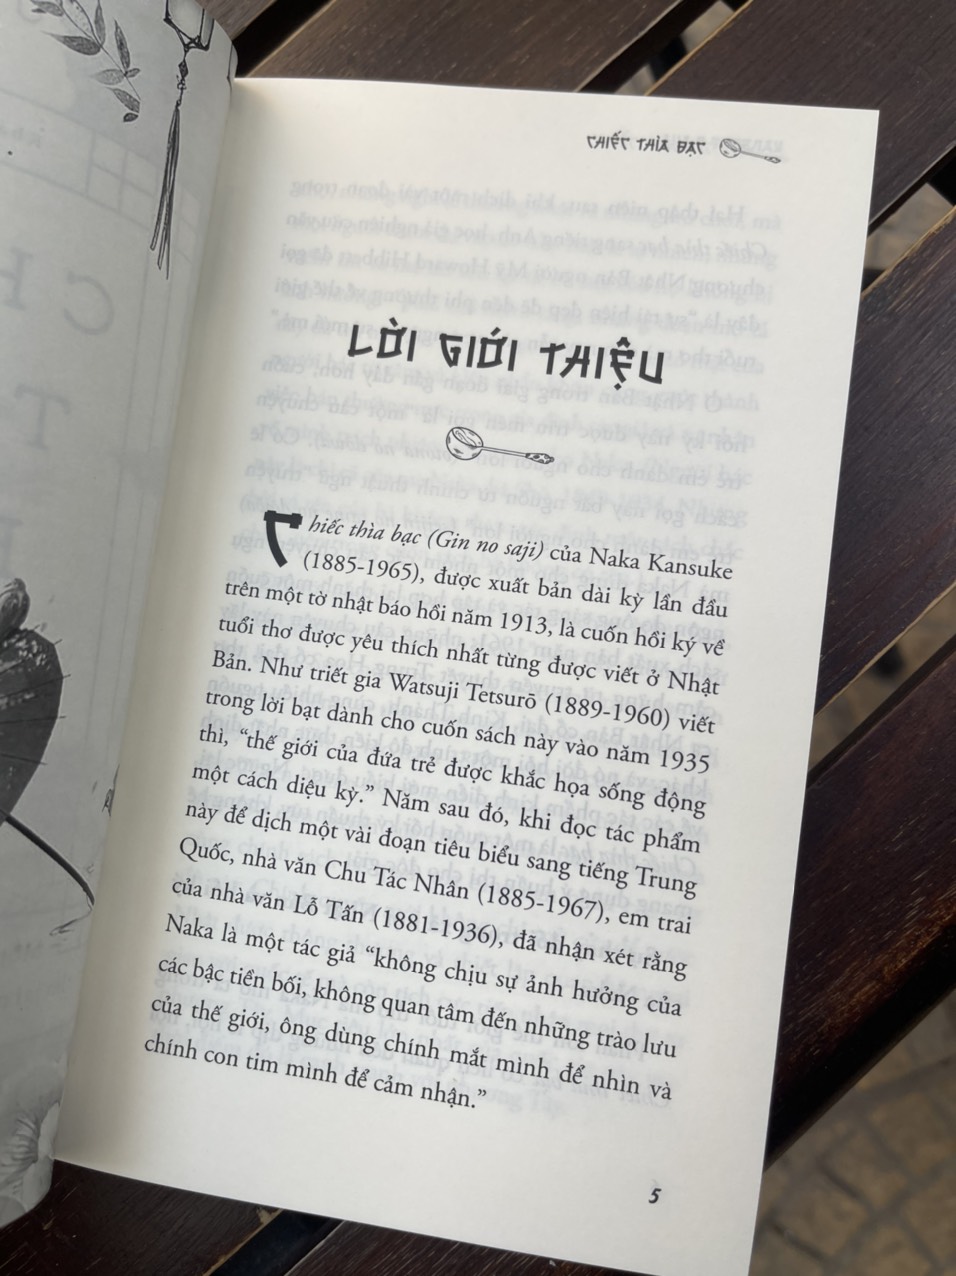 (Một trong những tác phẩm KINH ĐIỂN VĨ ĐẠI của văn học Nhật hiện đại với hơn 1 triệu bản đã được bán ra ) CHIẾC THÌA BẠC - Kansuke Naka - Khánh Trang dịch – 1980 Books – NXB Thanh Niên